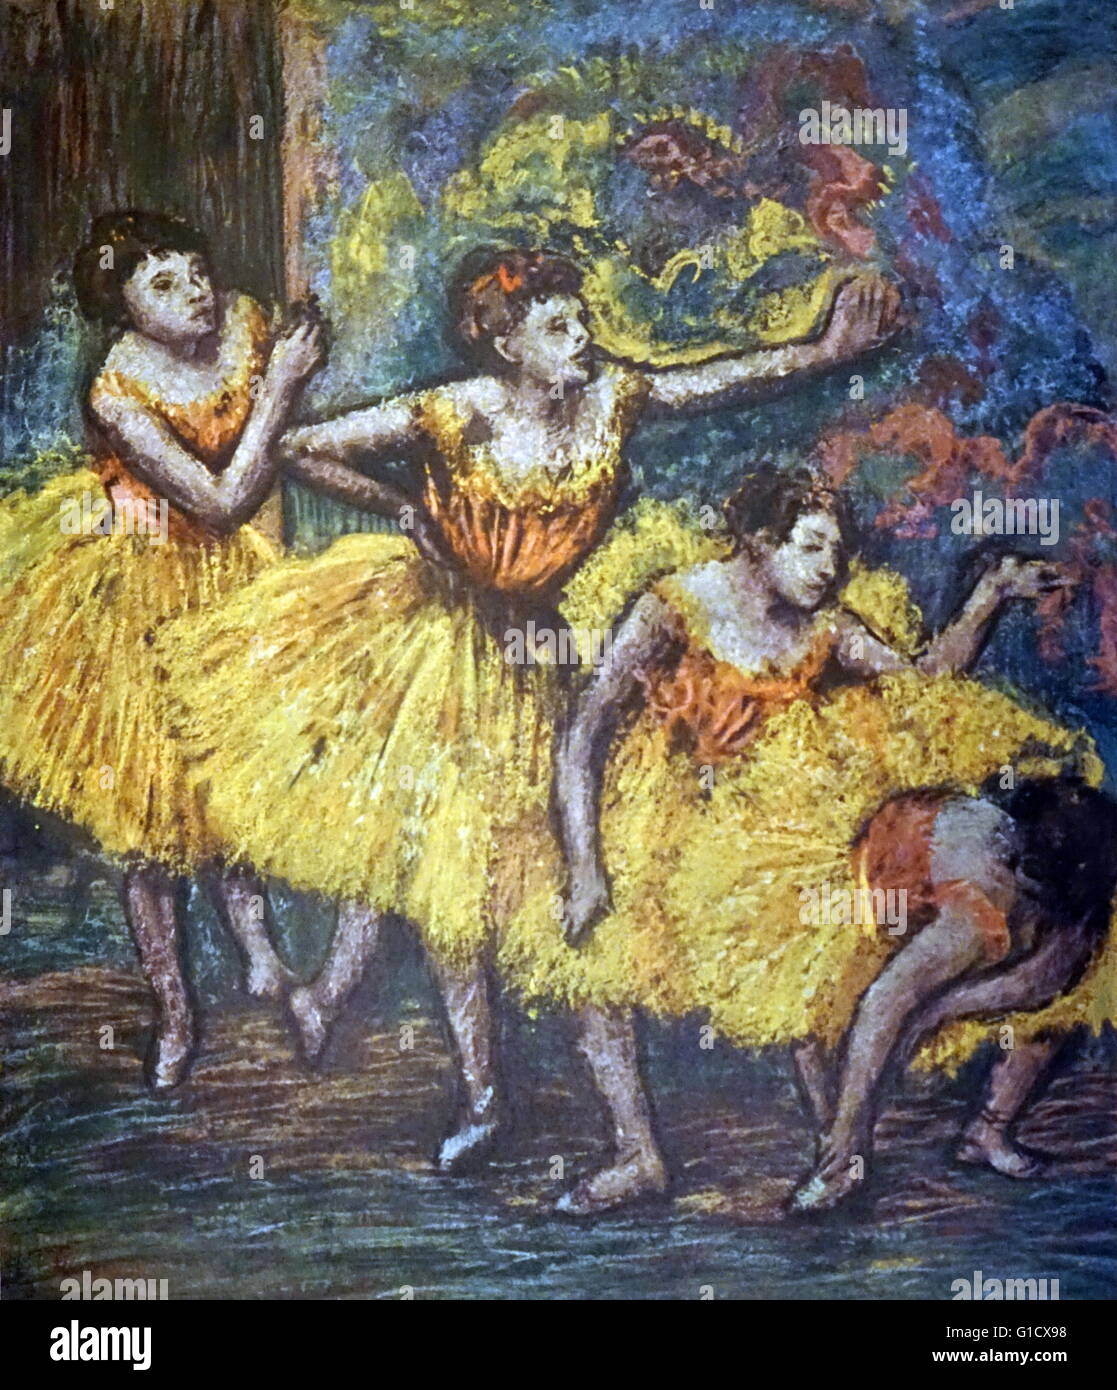 Gemälde mit dem Titel "Vier Tänzer" von Edgar Degas (1834-1917), ein französischer Künstler berühmt für seine Gemälde, Skulpturen, Drucke und Zeichnungen. Vom 19. Jahrhundert Stockfoto